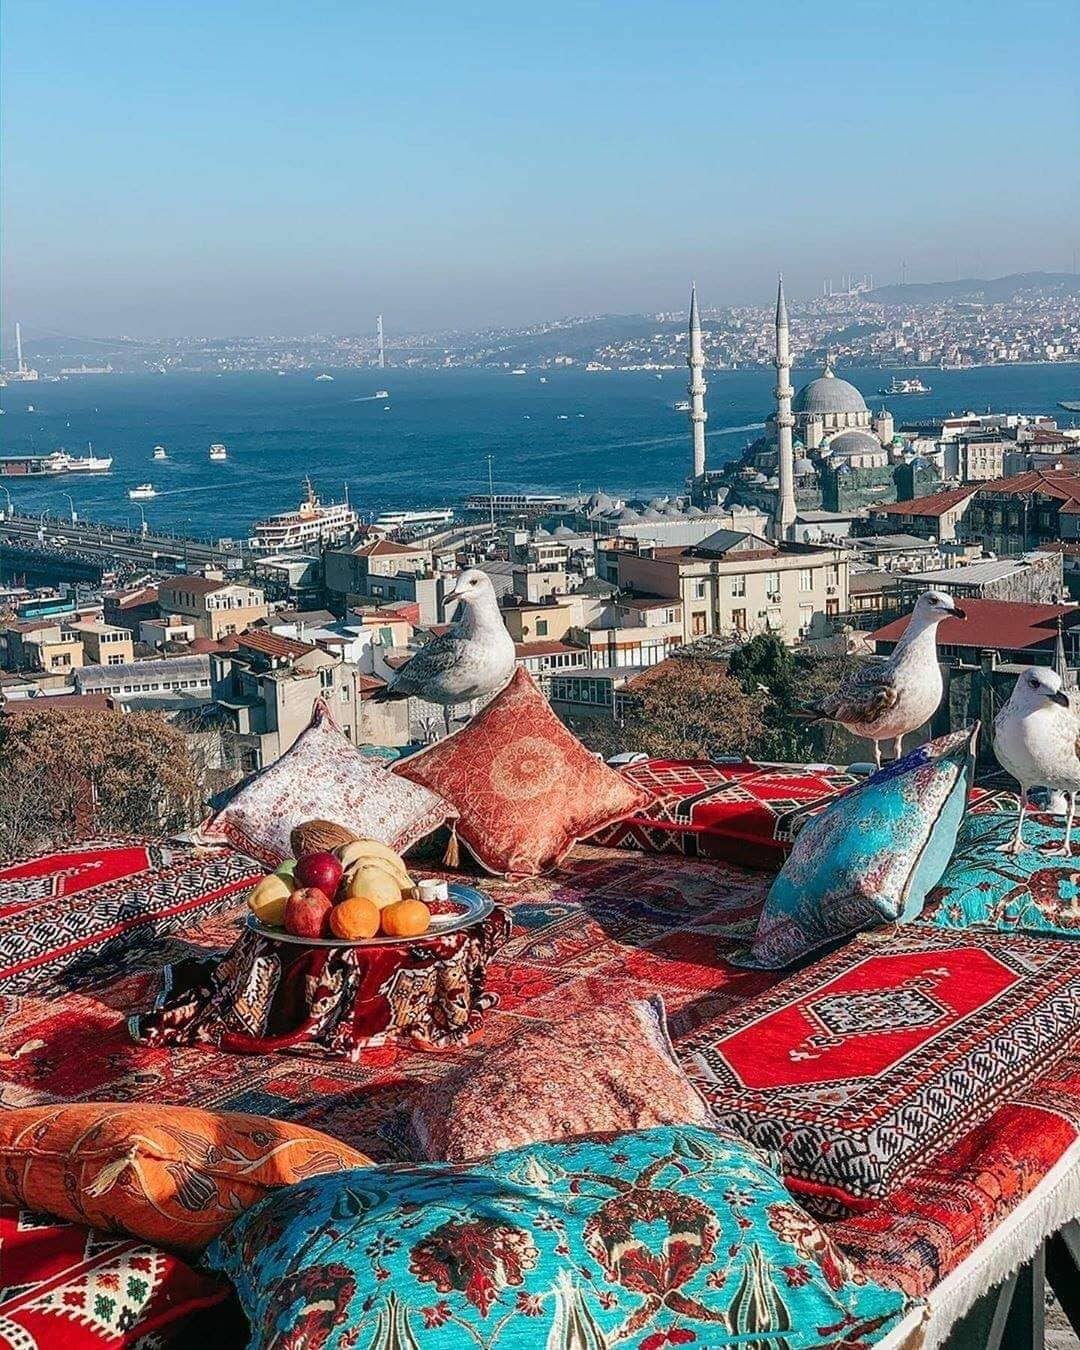 مکان زیبایی در استانبول